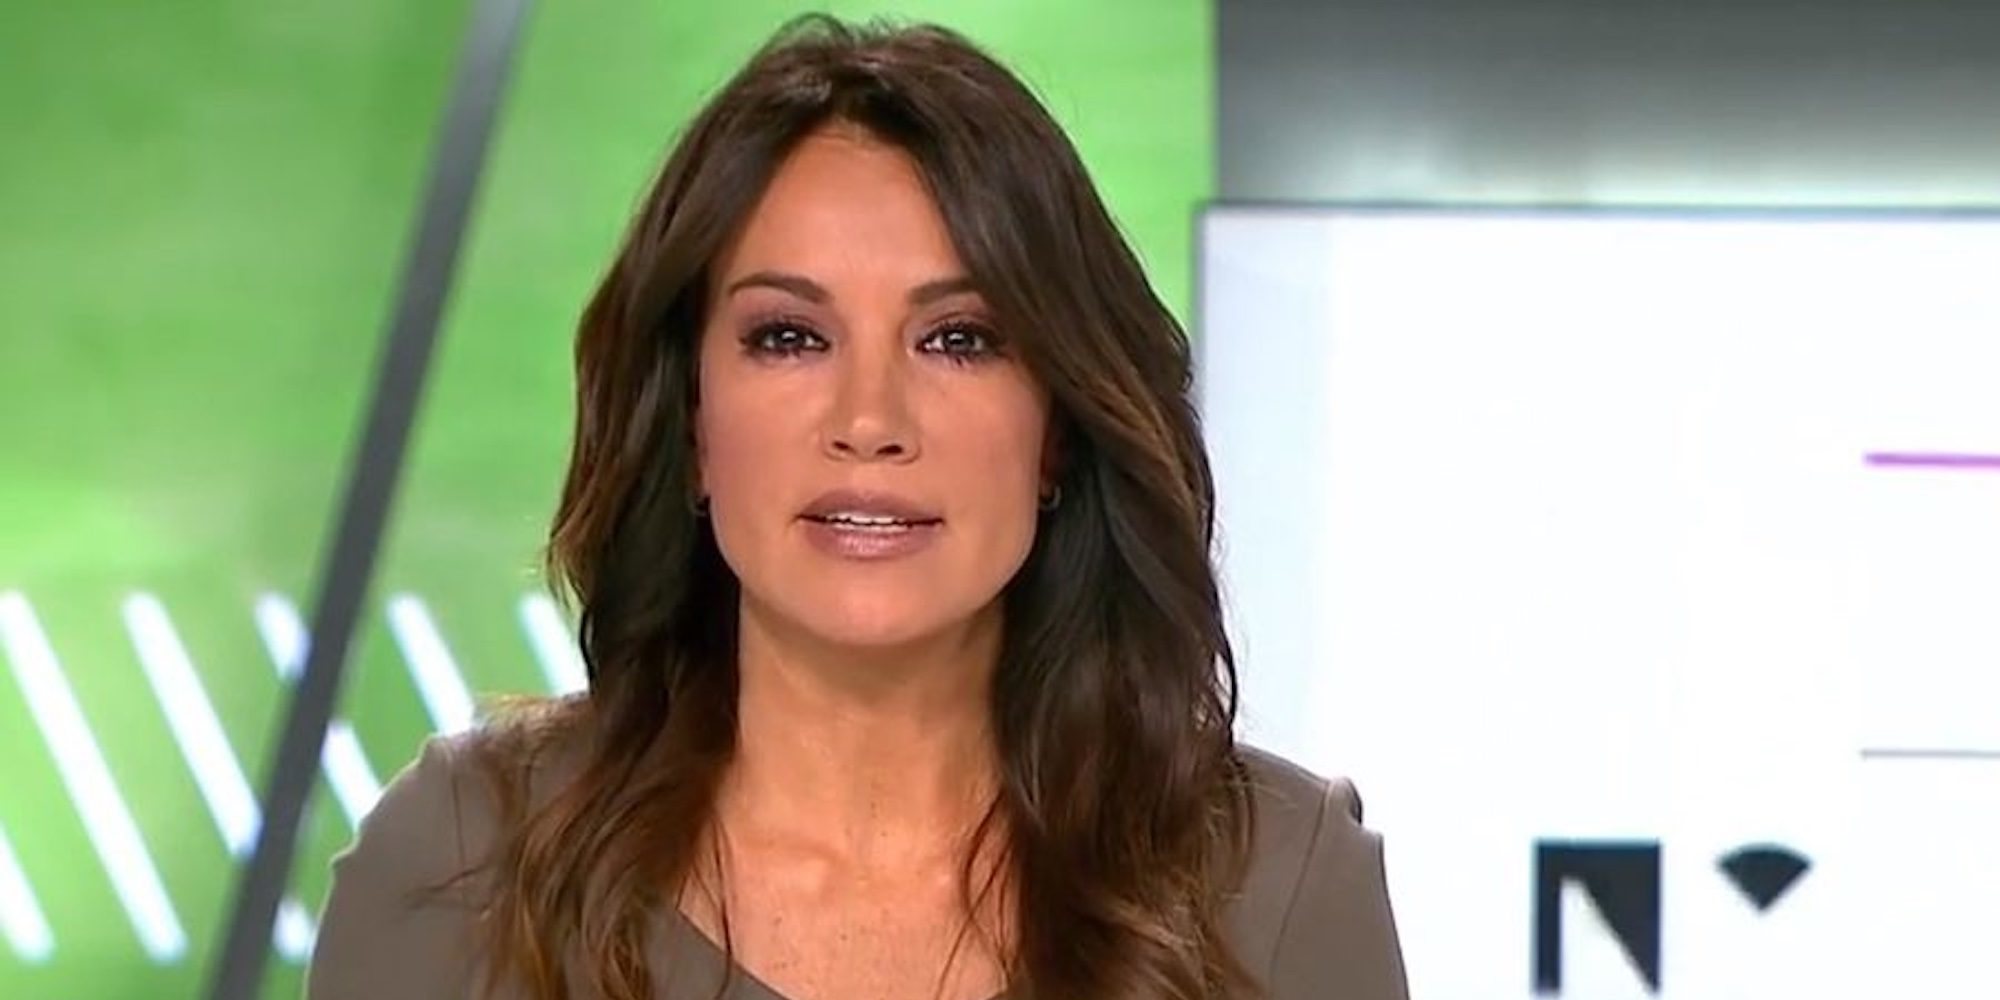 La presentadora Cristina Saavedra estalla contra los que critican su moreno: "Coño, qué pesados sois"